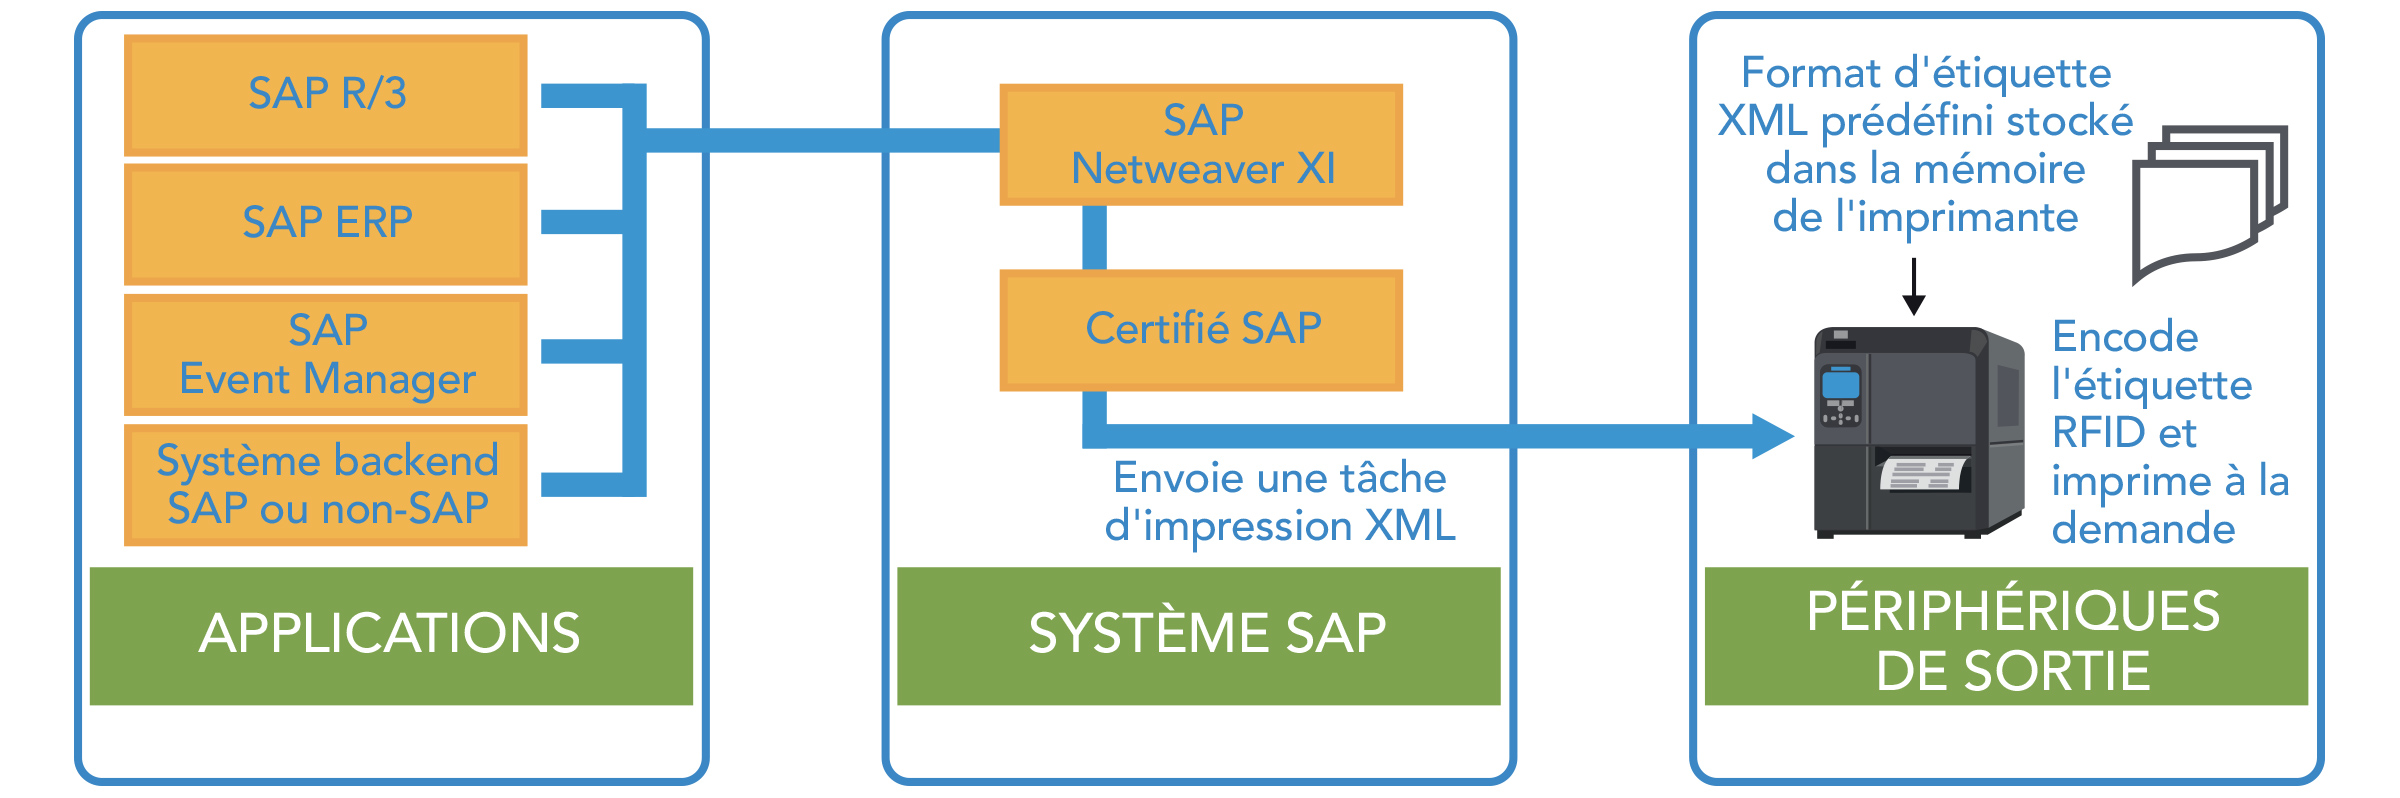 Applications > Système SAP > Périphériques de sortie